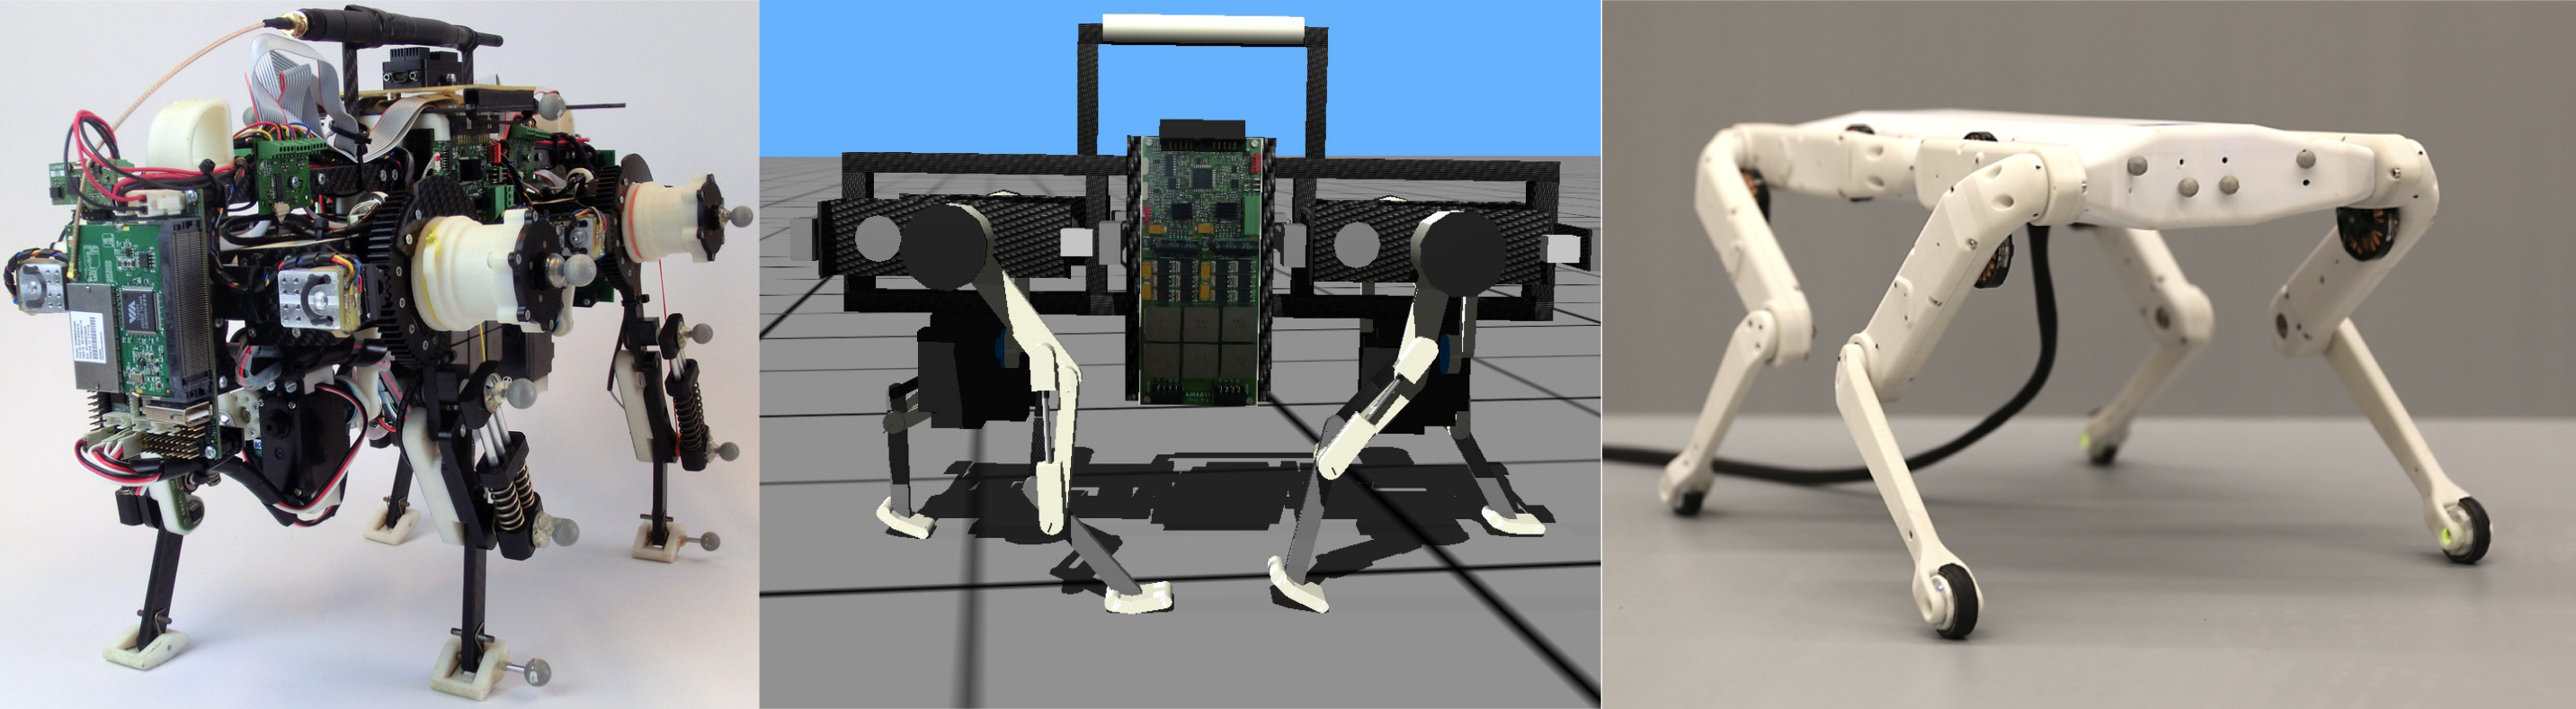 Open-source legged robots | Autonomous - Max Planck Institute for Systems